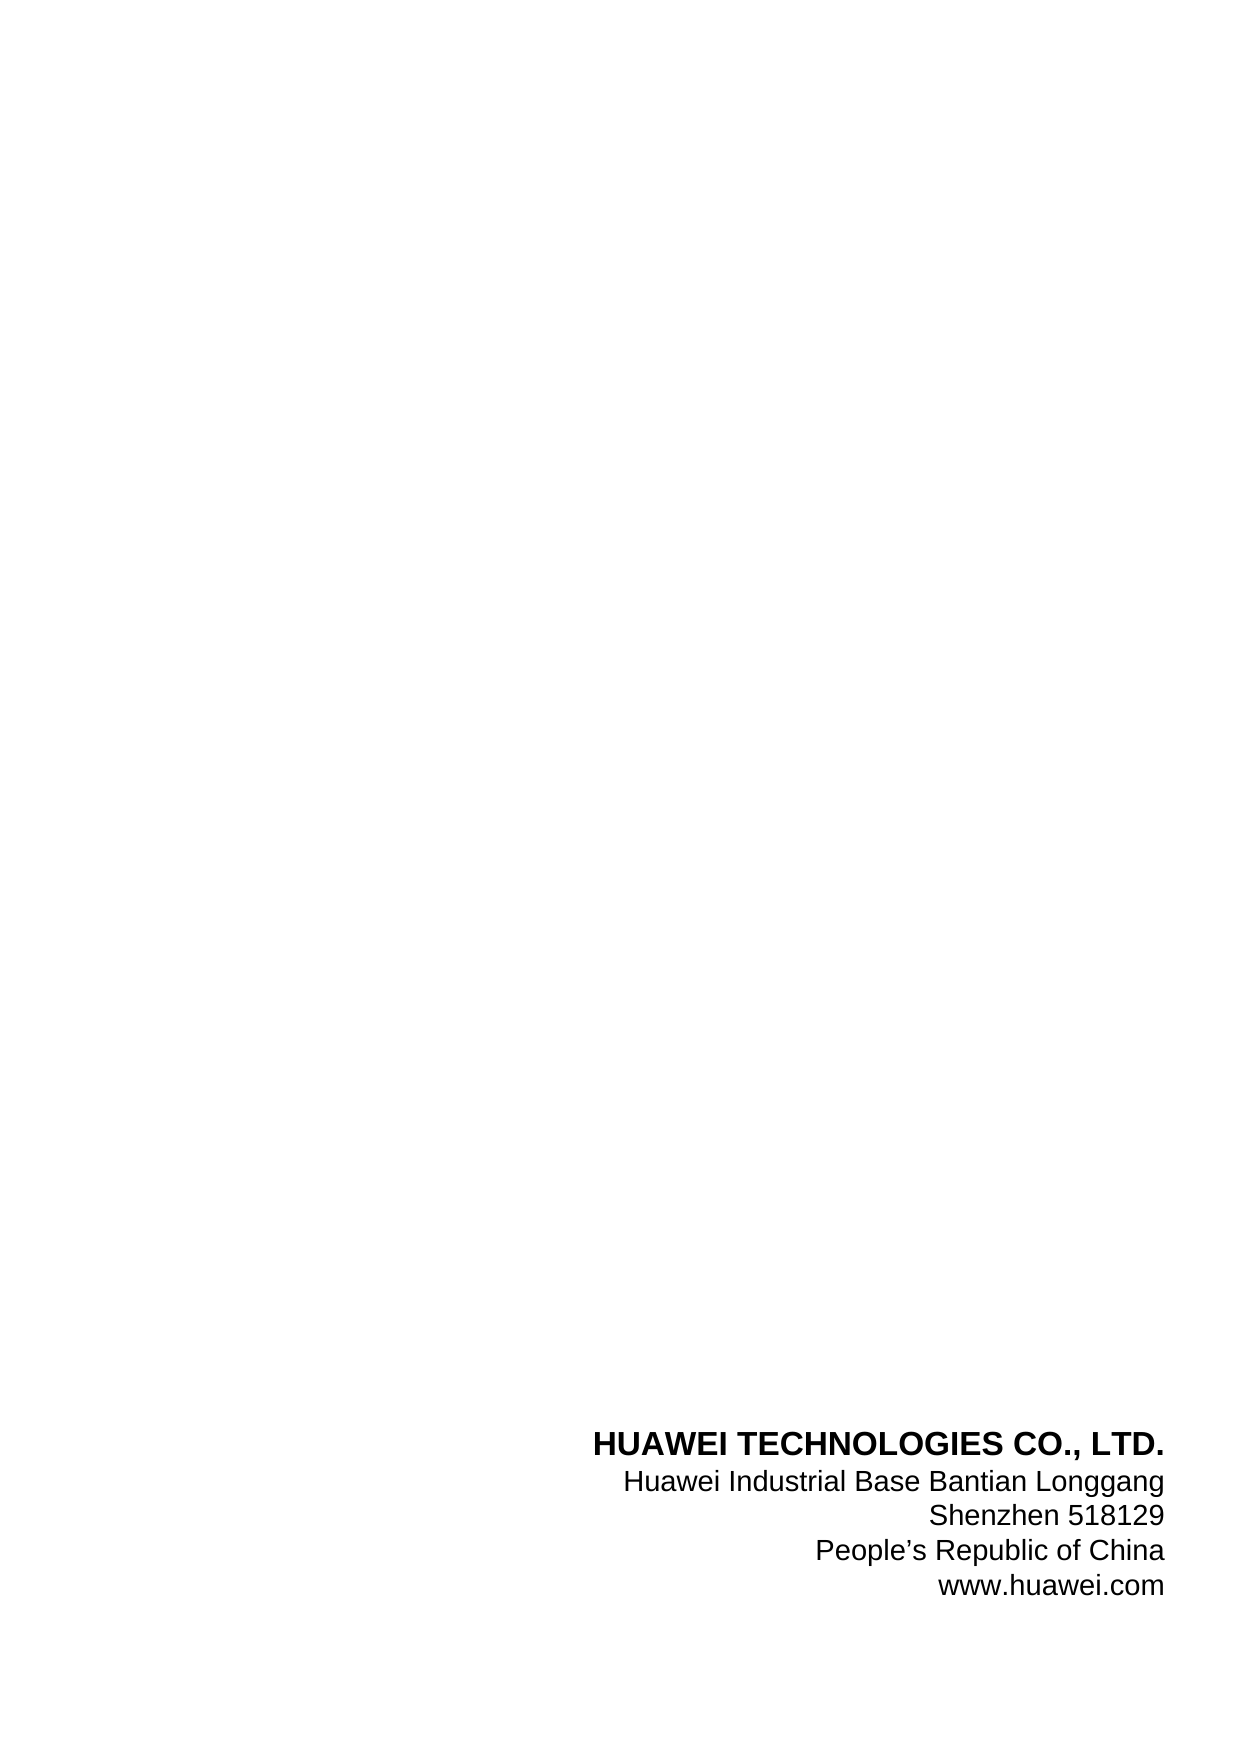 HUAWEI TECHNOLOGIES CO., LTD.Huawei Industrial Base Bantian LonggangShenzhen 518129People’s Republic of Chinawww.huawei.com